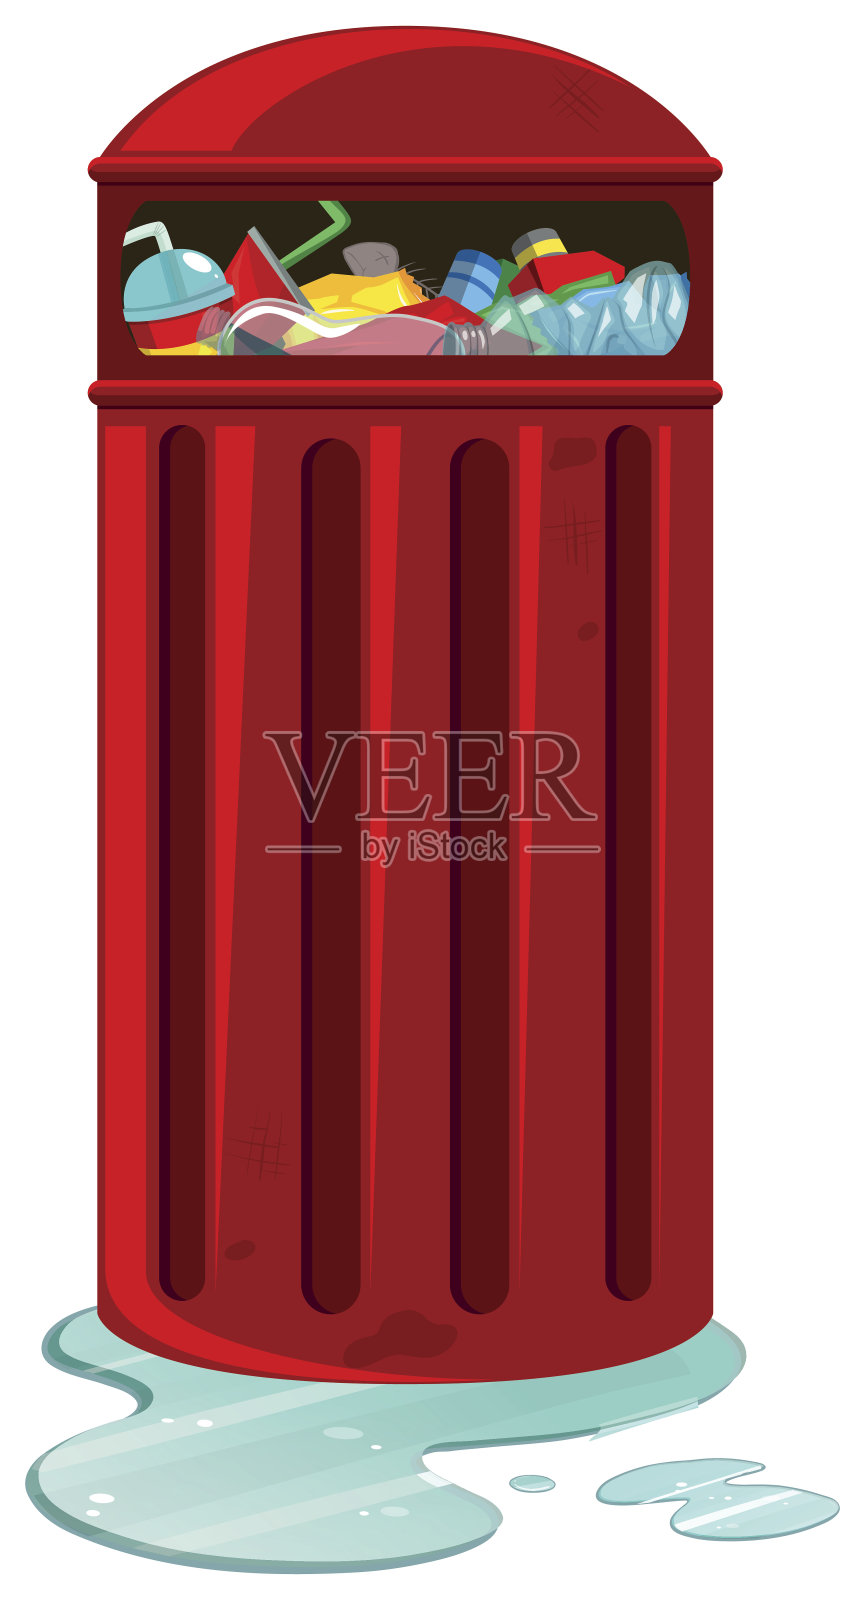 装满垃圾的红色垃圾桶插画图片素材